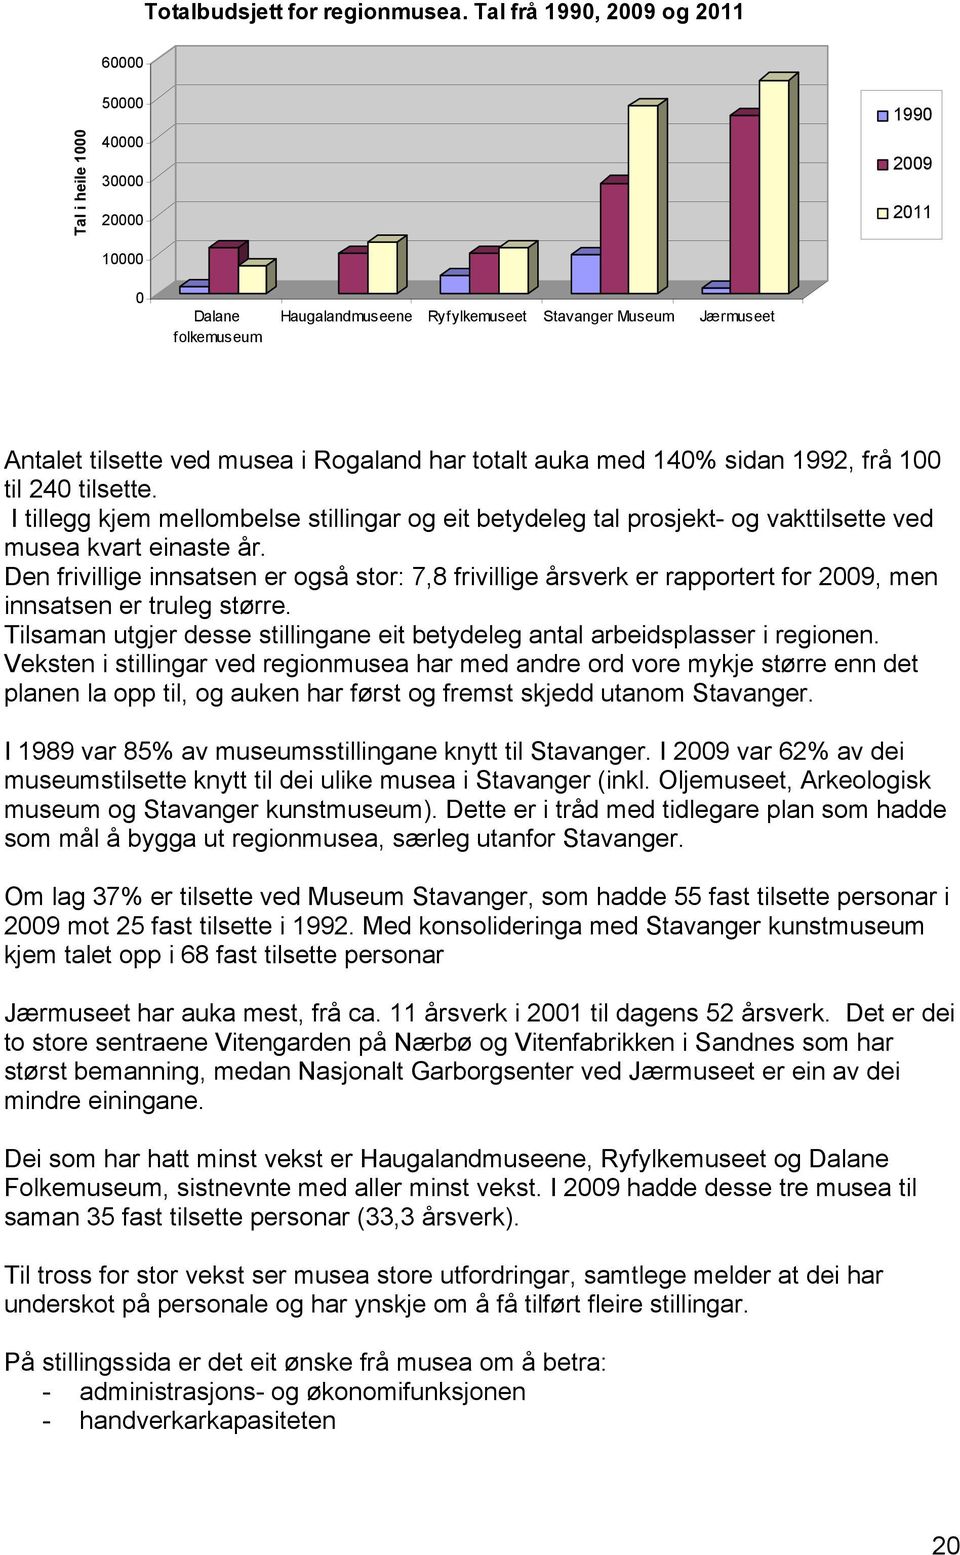 musea i Rogaland har totalt auka med 140% sidan 1992, frå 100 til 240 tilsette. I tillegg kjem mellombelse stillingar og eit betydeleg tal prosjekt- og vakttilsette ved musea kvart einaste år.